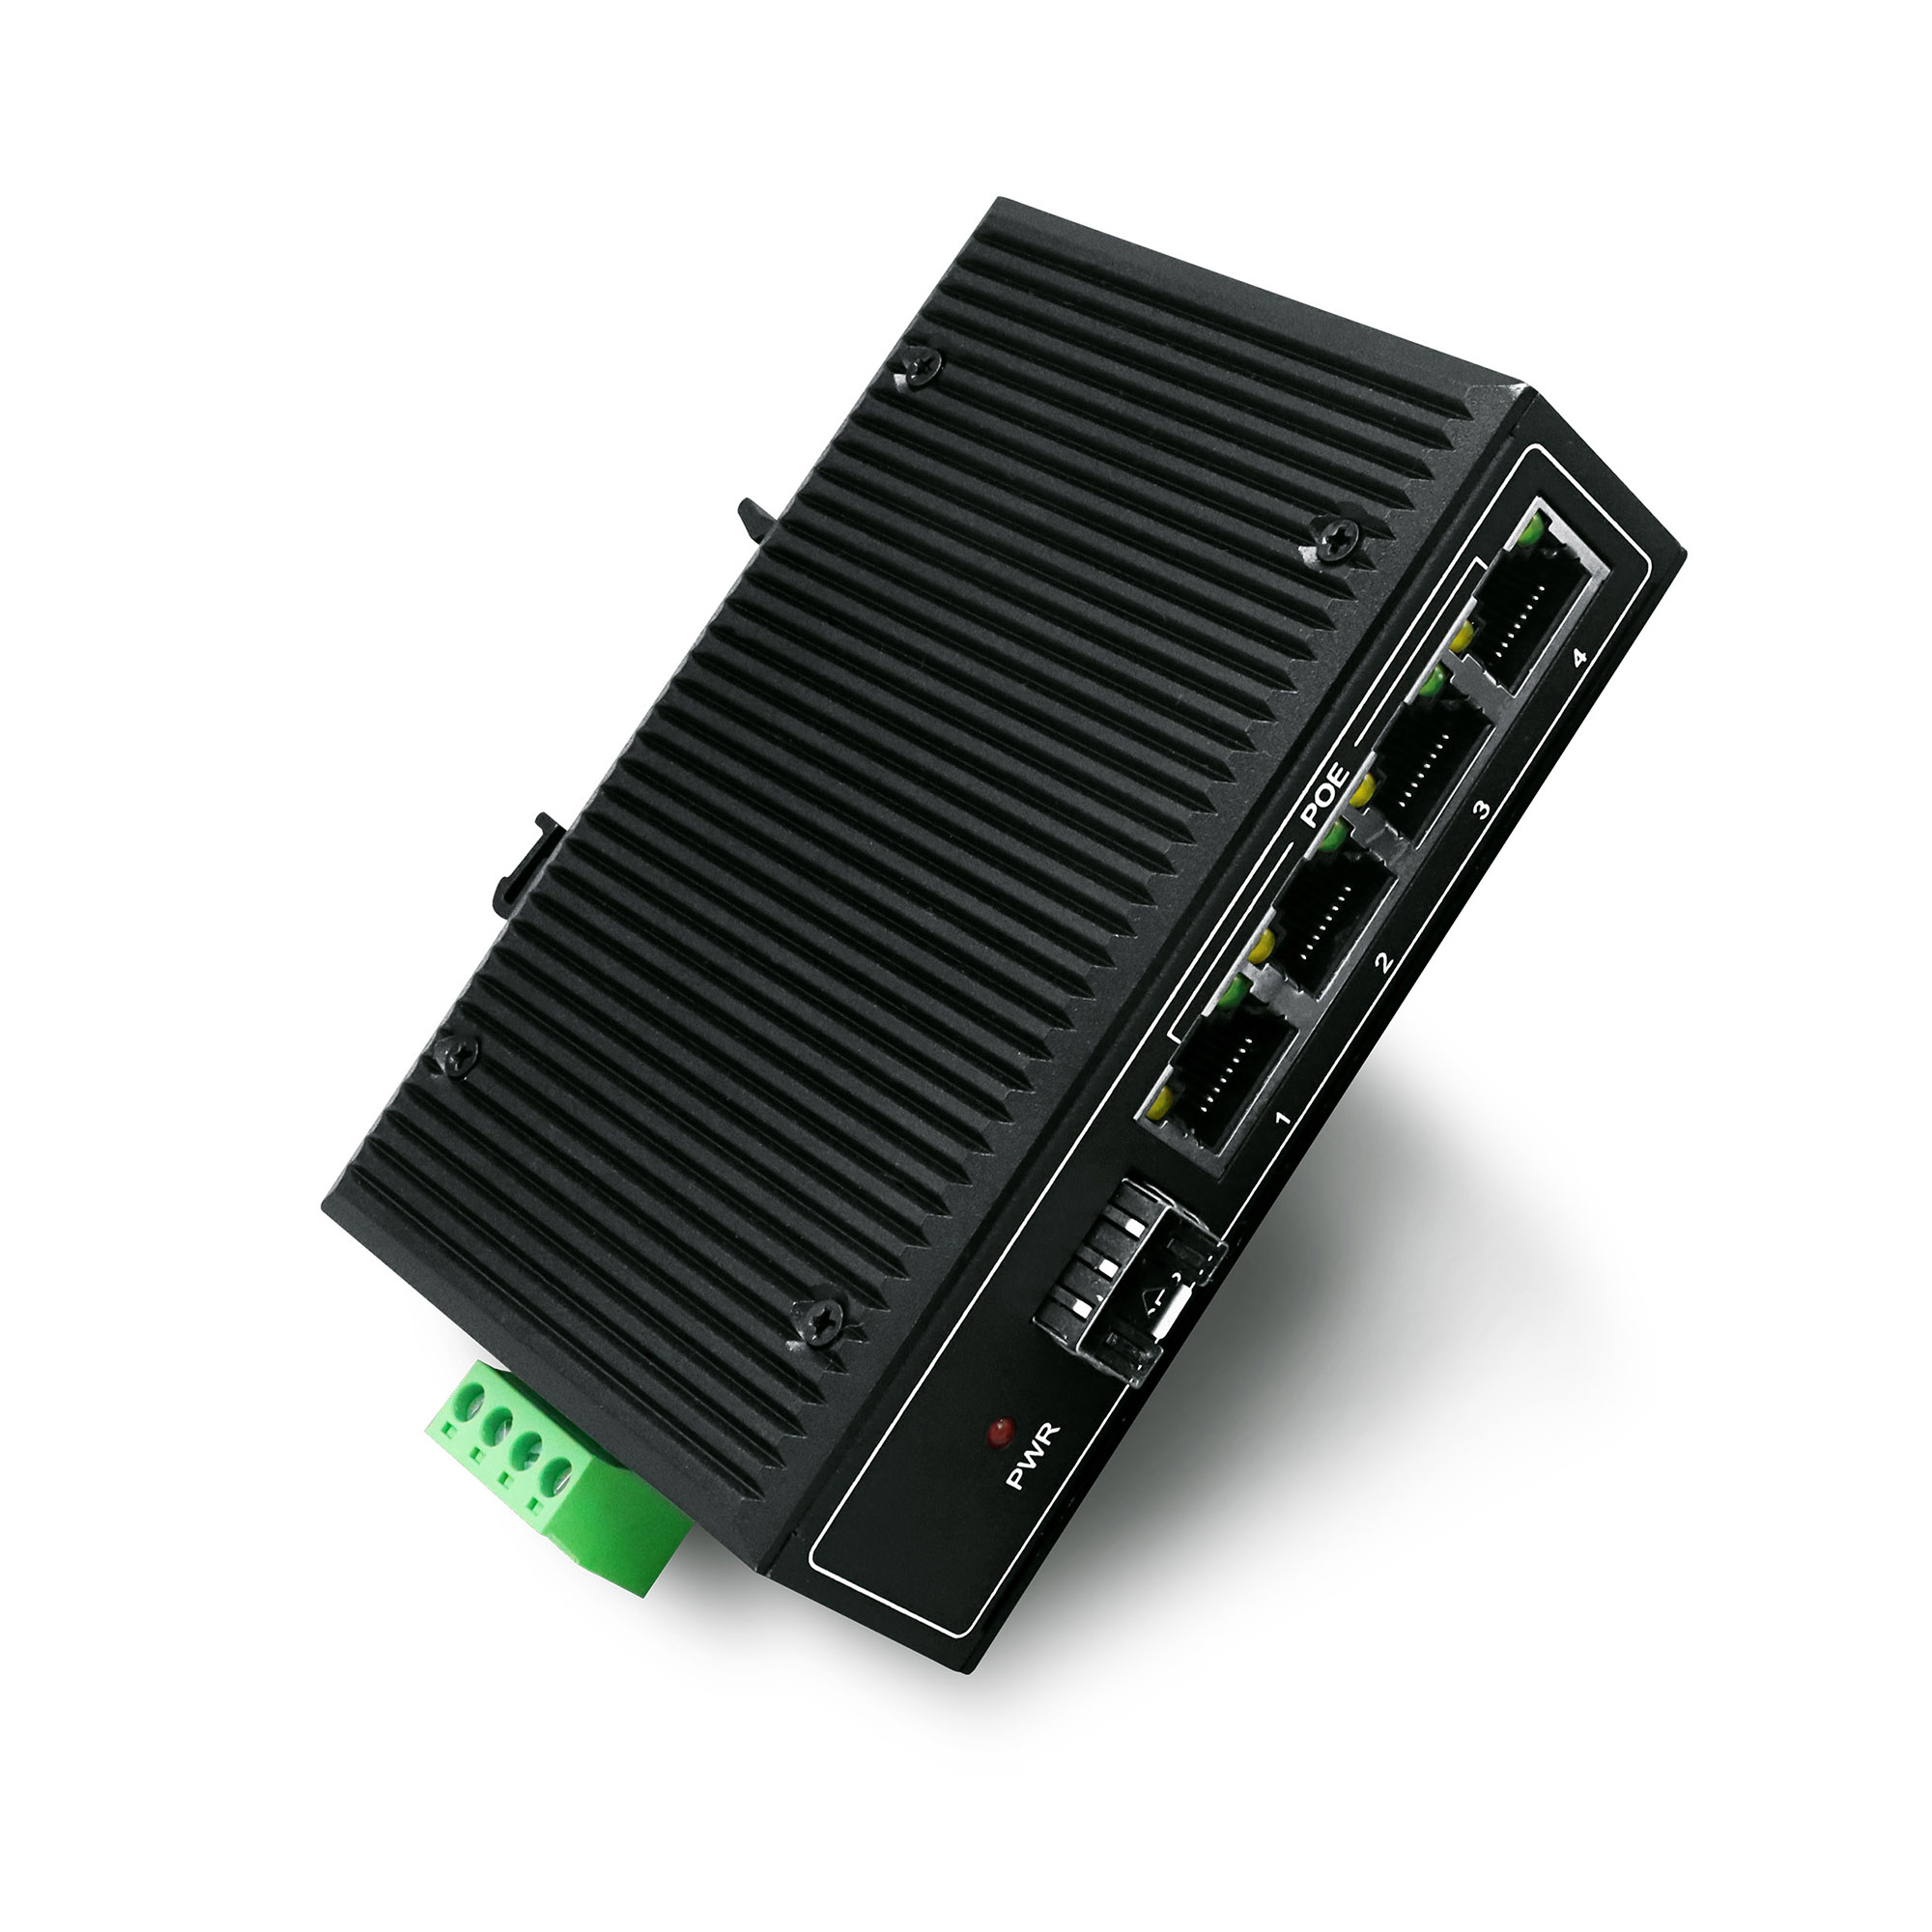 YN-SF105SP4 Industrial Ethernet PoE Switch